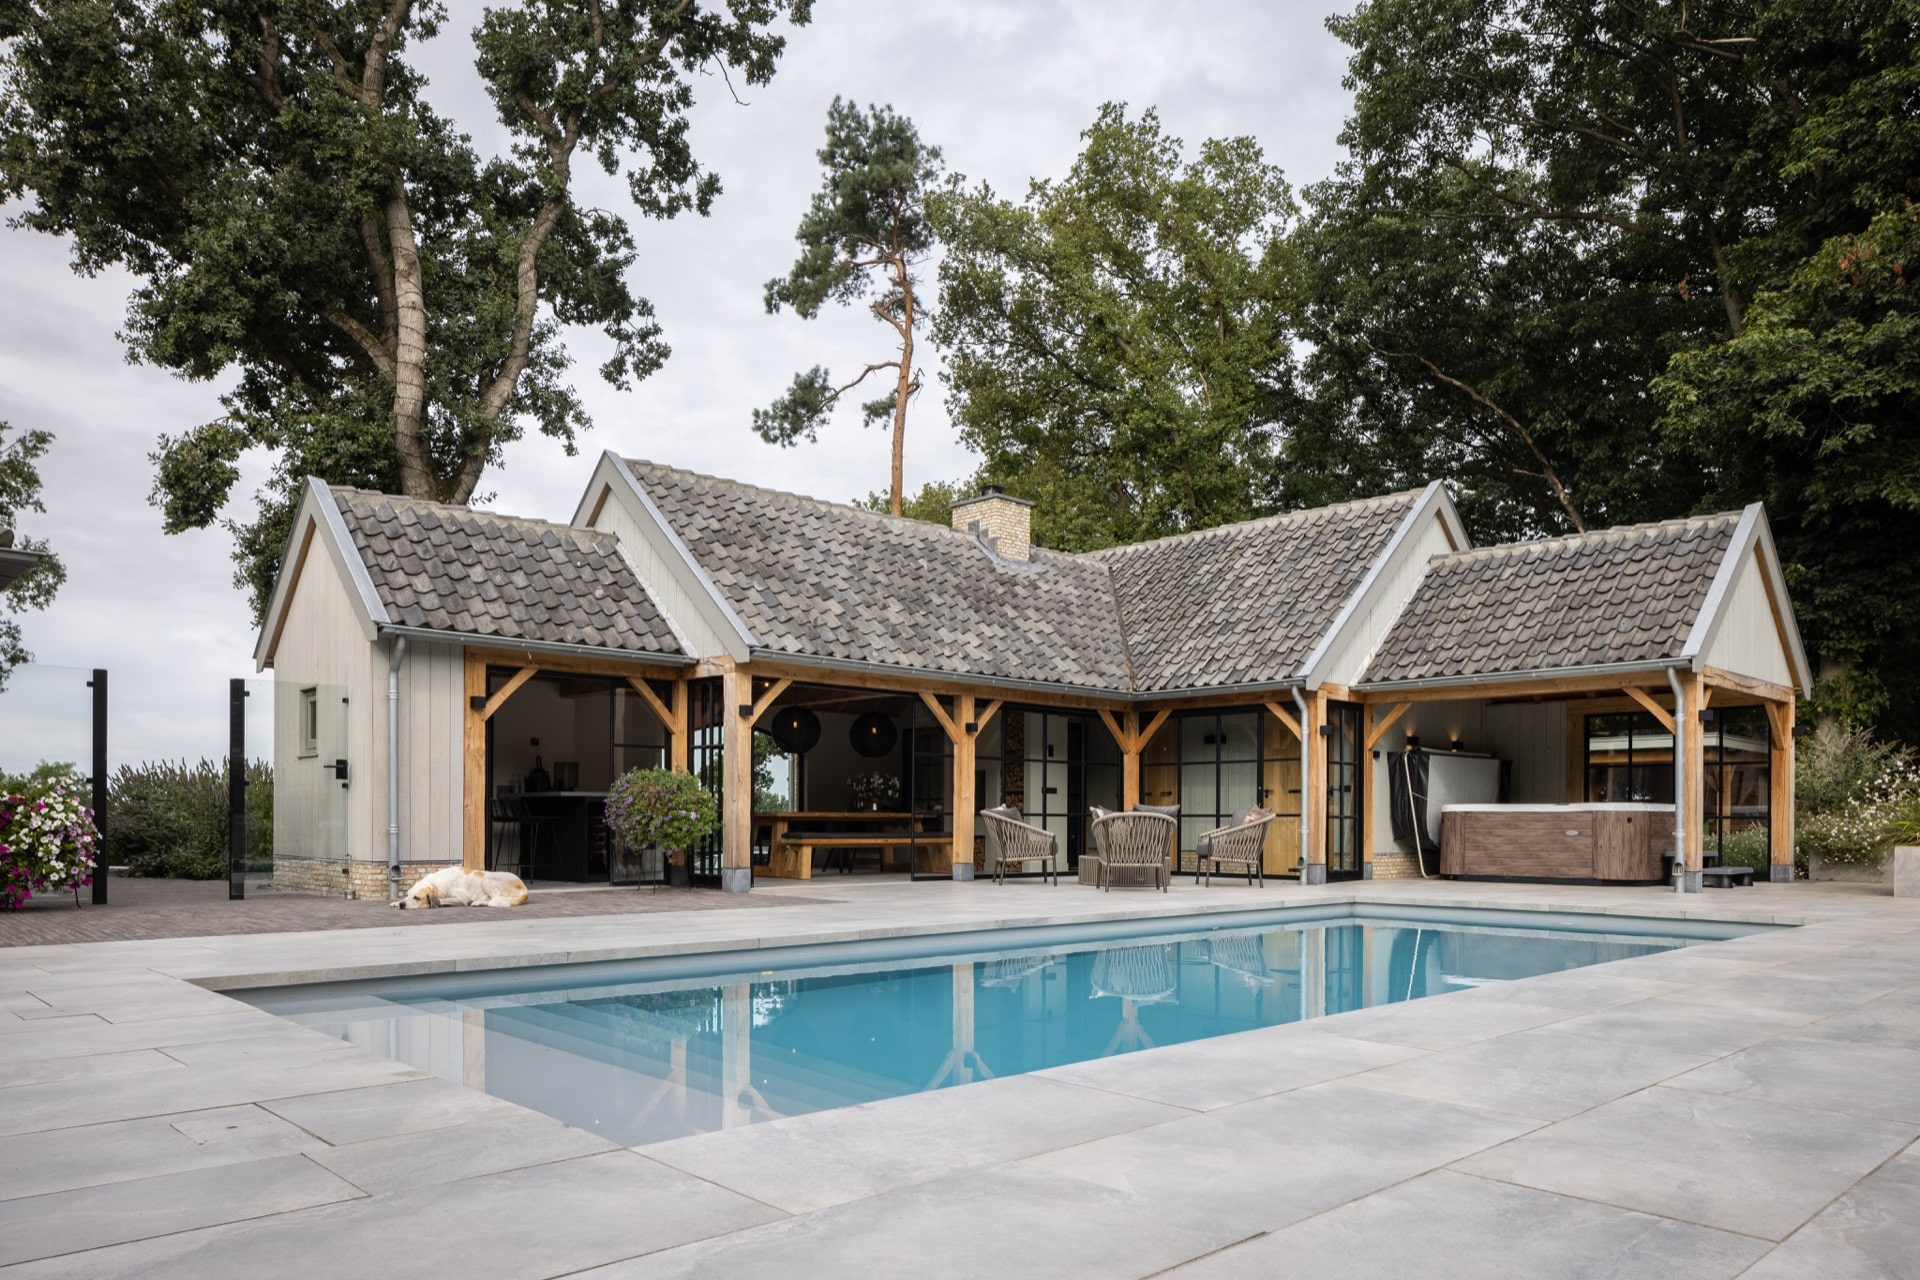 Foto : Zwembaden met poolhouse. Vind een stijl die bij u past!